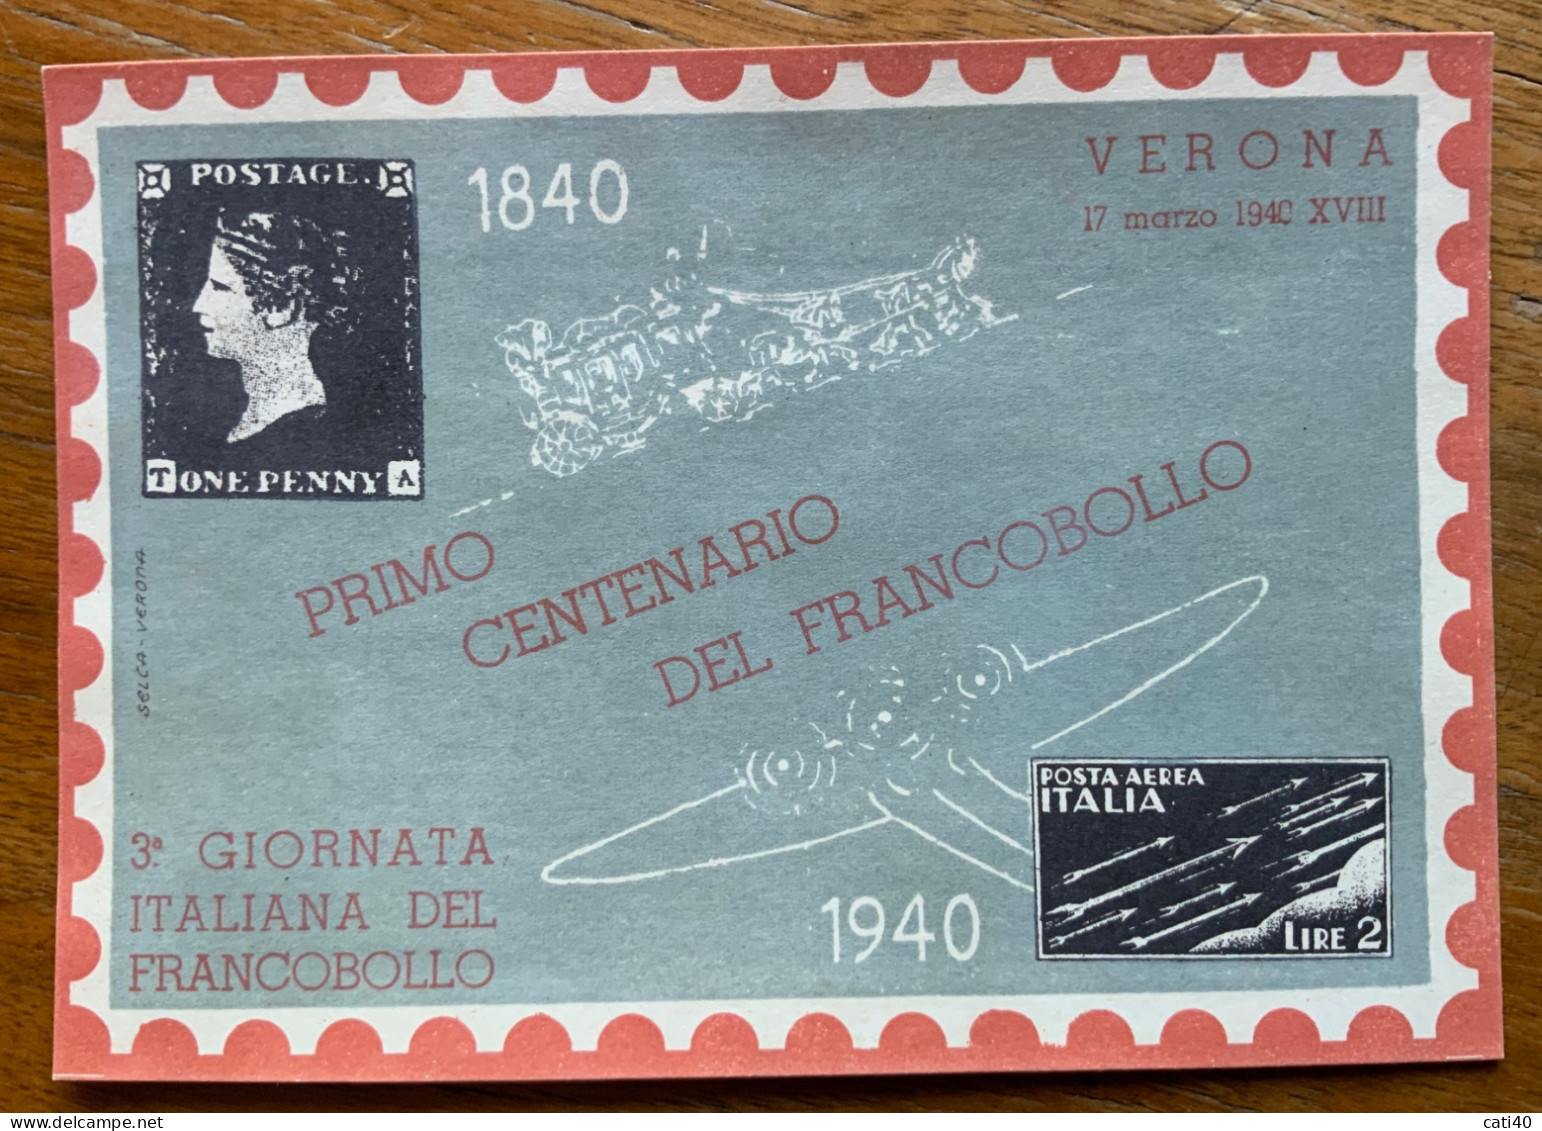 PRIMO CENTENARIO DEL FRANCOBOLLO 1840 - 1940 - VERONA 3 GIORNATA ITALIANA DEL FRANCOBOLLO - Manifestations